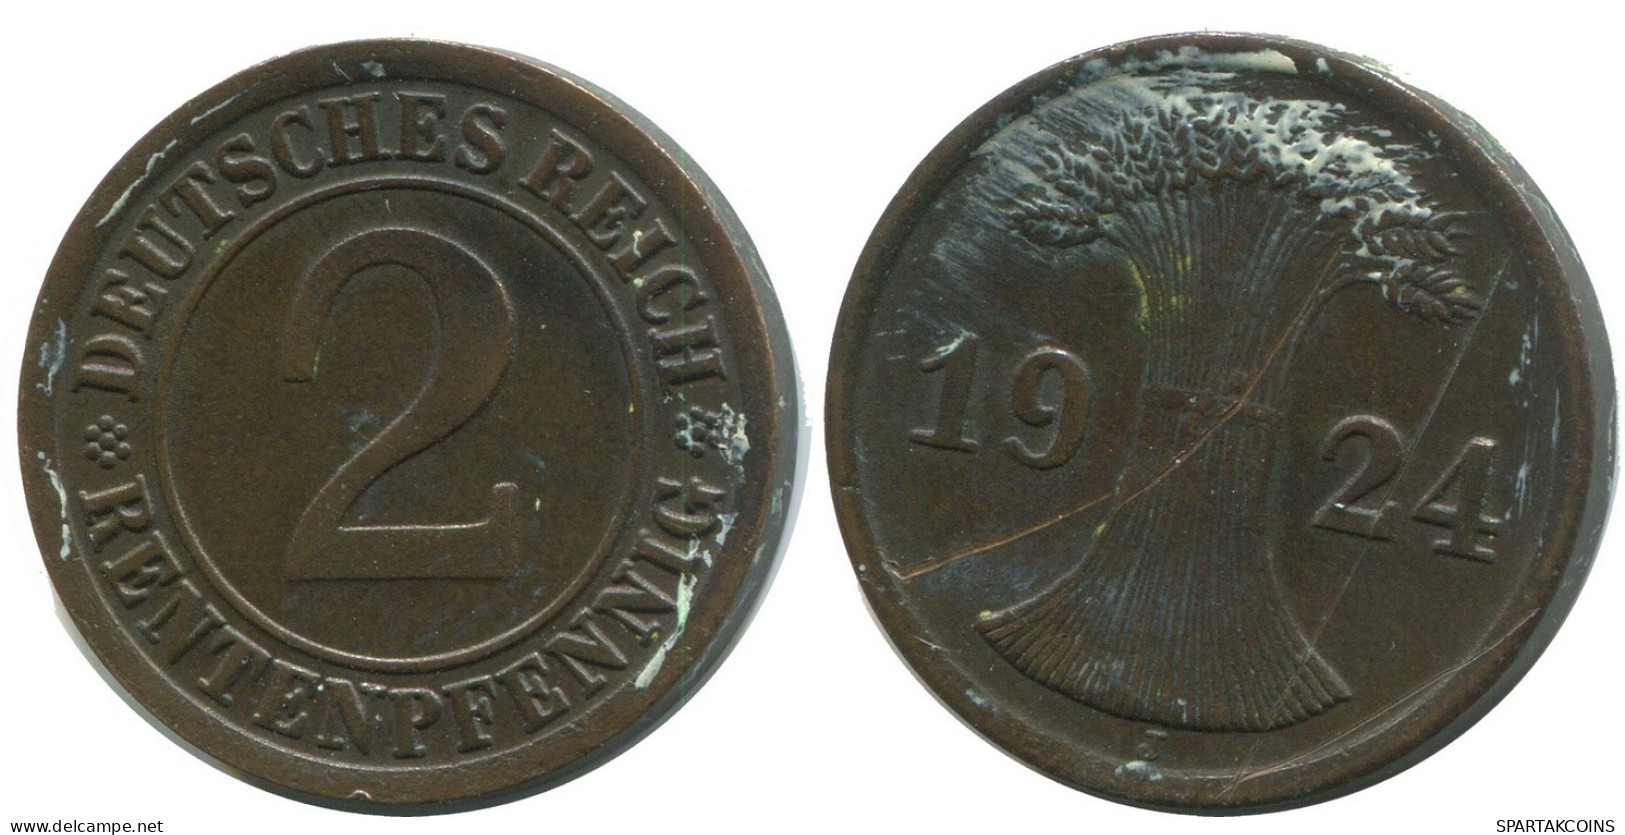 2 RENTENPFENNIG 1924 J GERMANY Coin #AD463.9.U - 2 Rentenpfennig & 2 Reichspfennig